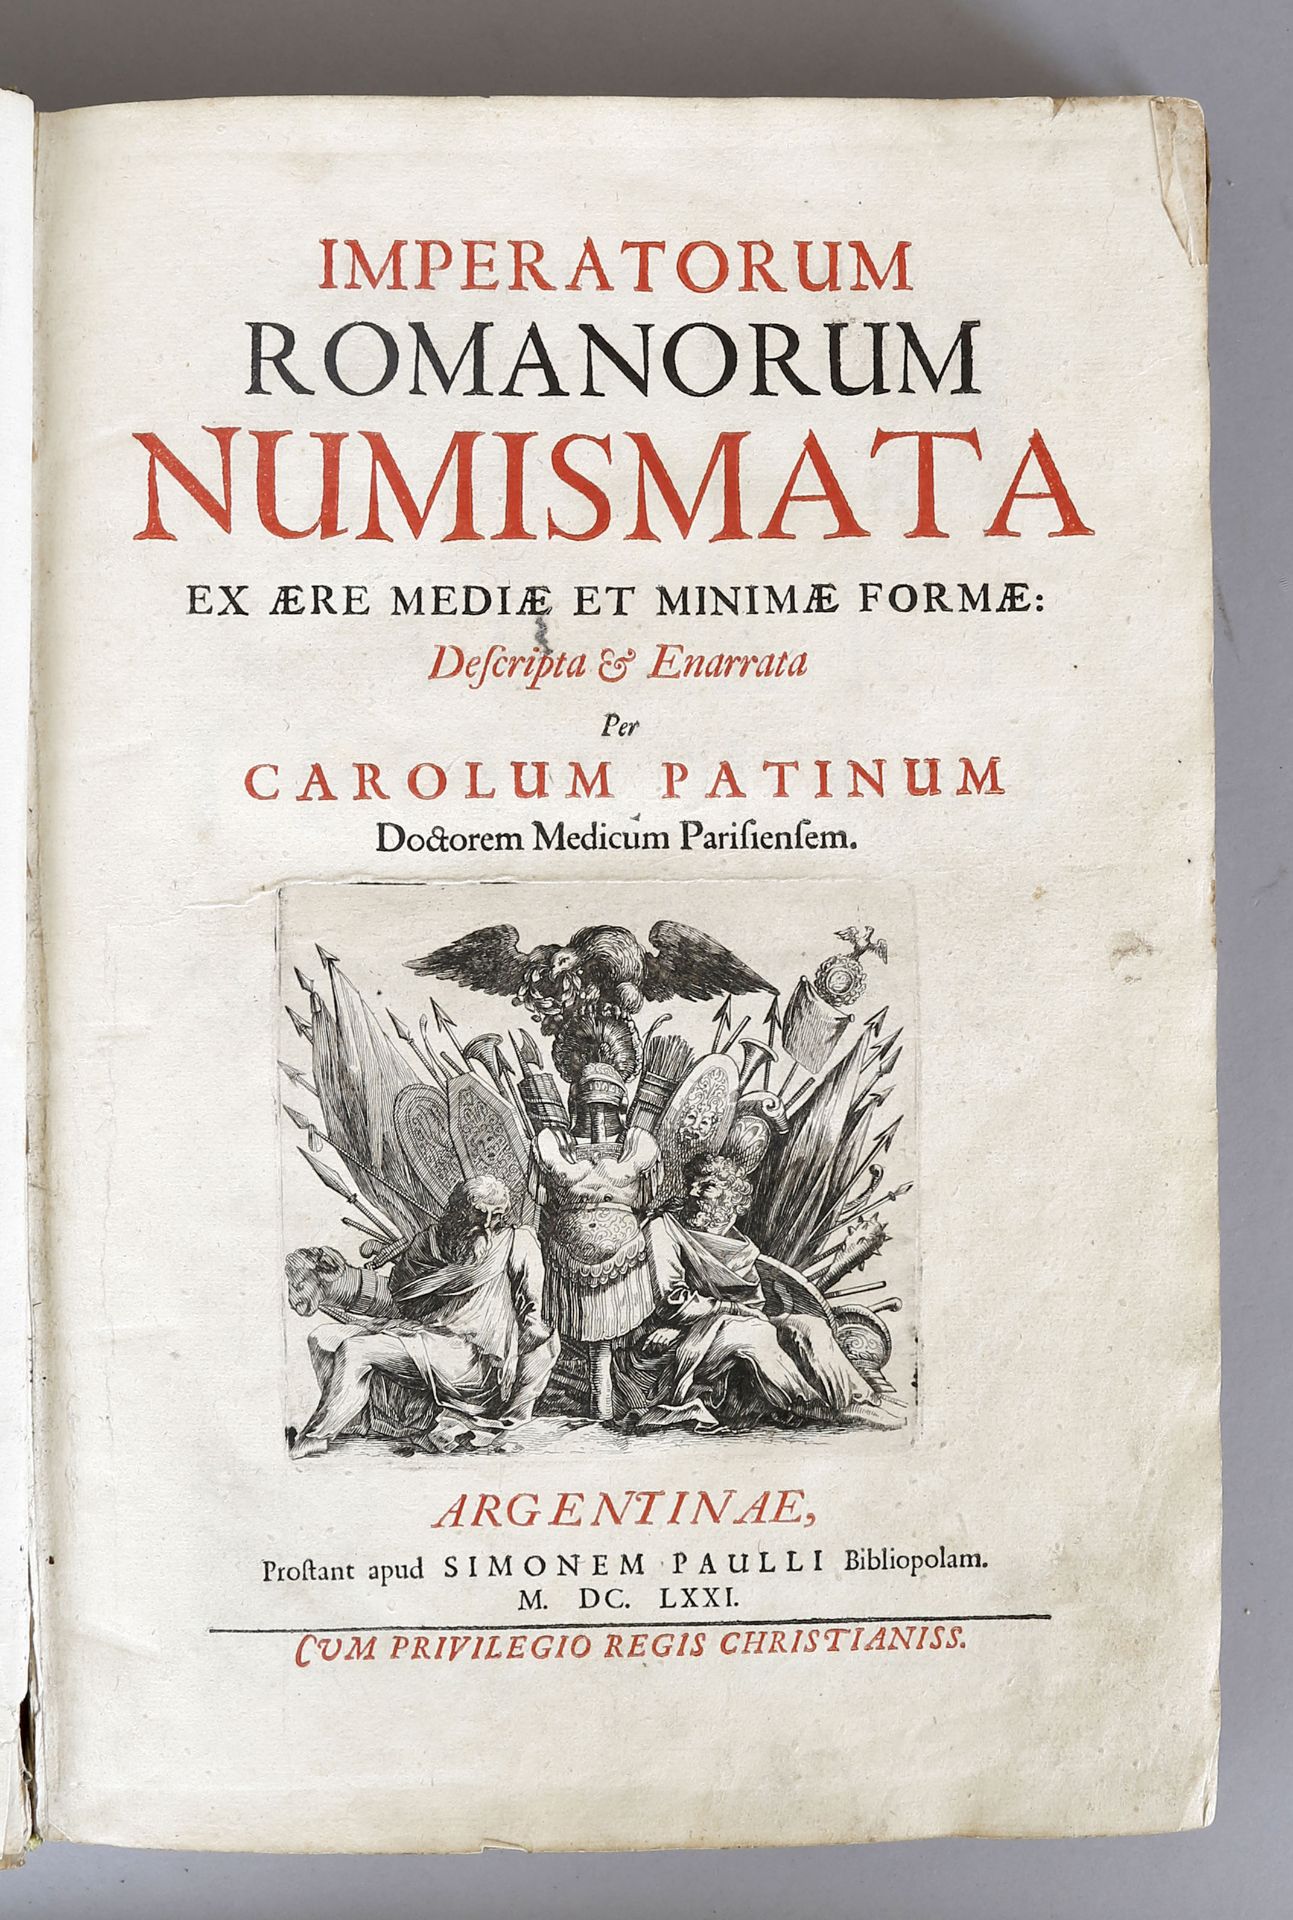 Charles Patin, Imperatorum Romanorum Numismata (Münzkatalog der Römischen Kaiser), Straßburg 1671